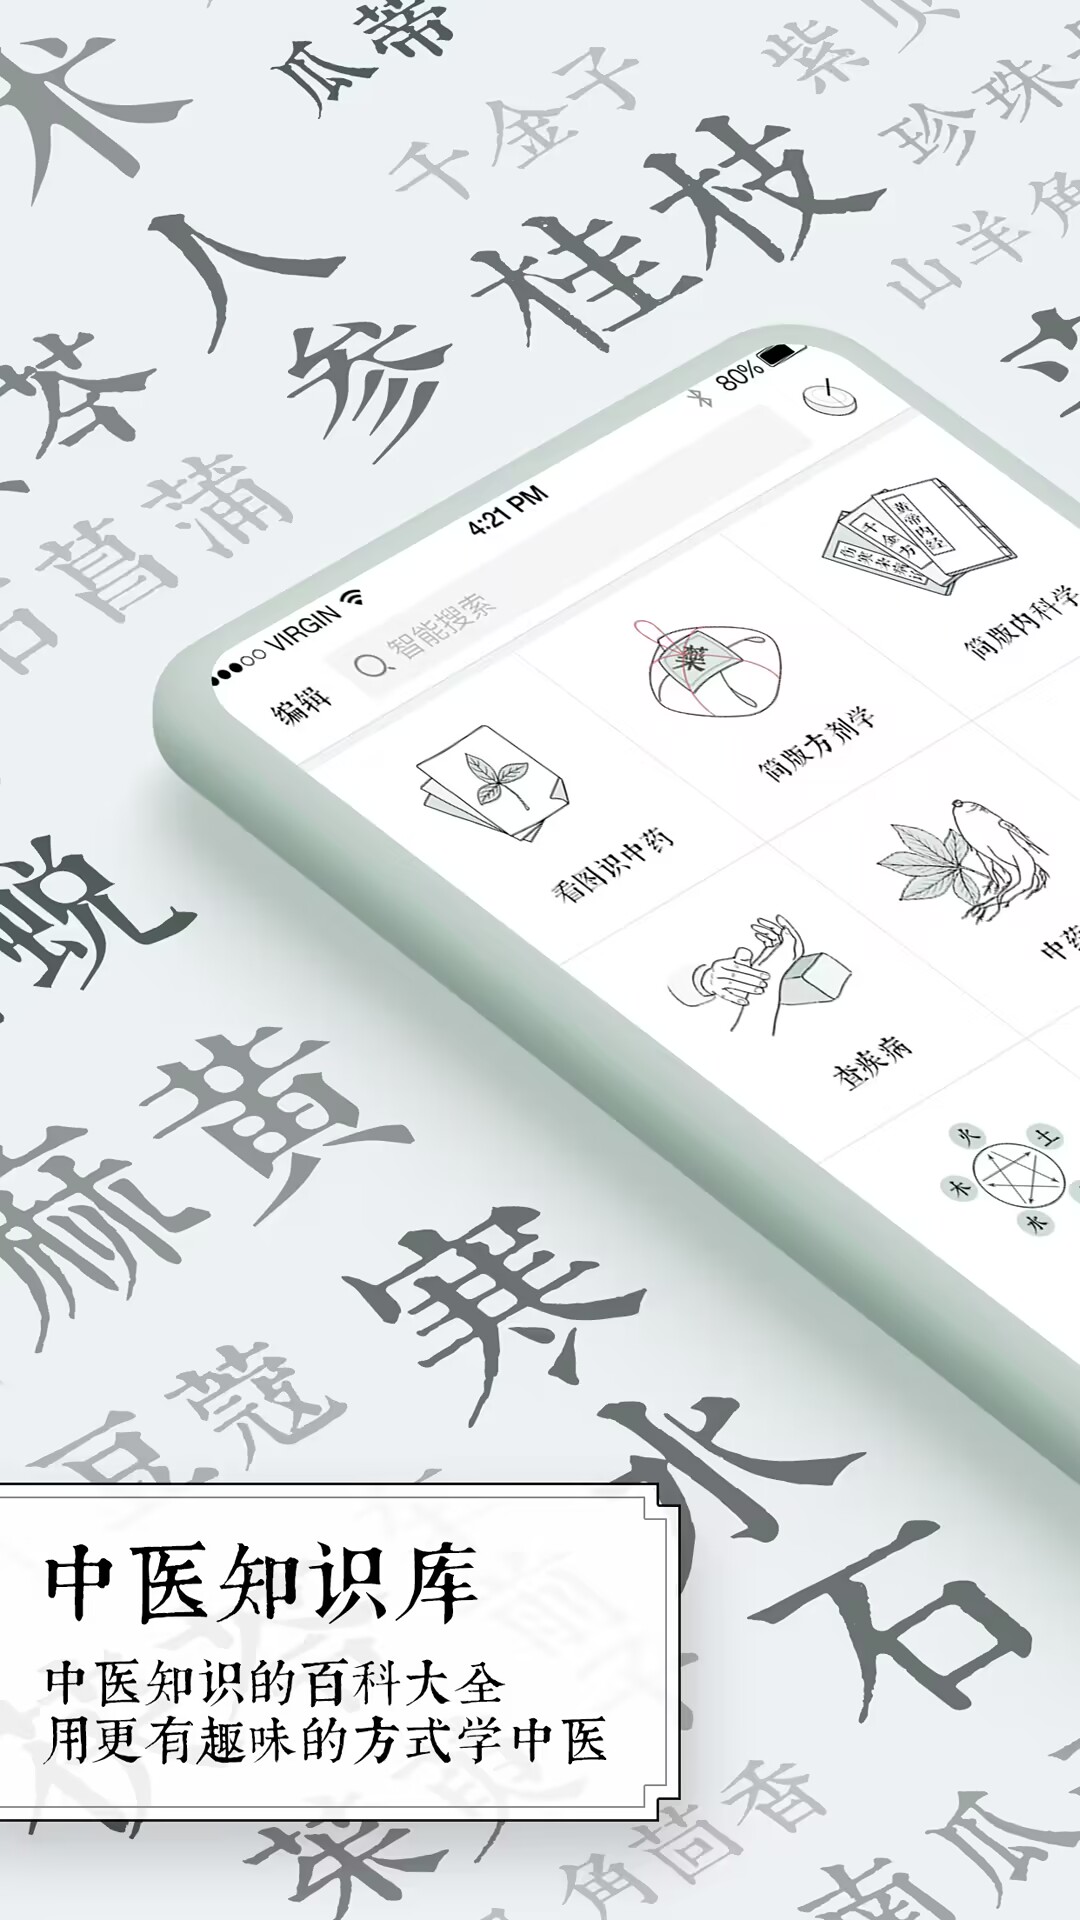 中医app哪些好 中医方面的软件分享